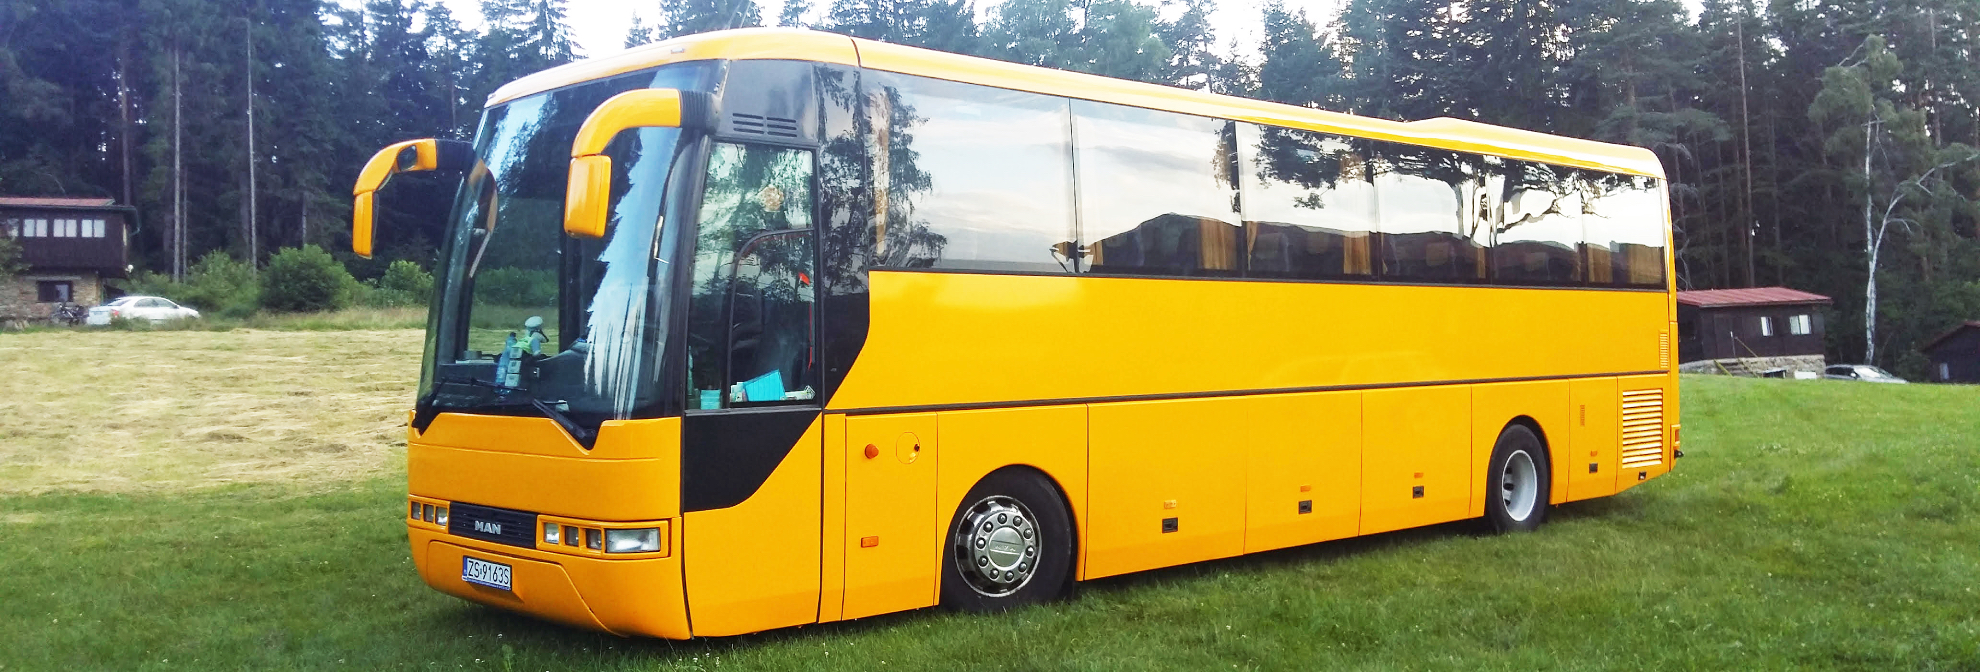 Na zdjęciu widać duży, żółty autobus, którego właścicielem jest firma Miodzio-Bus